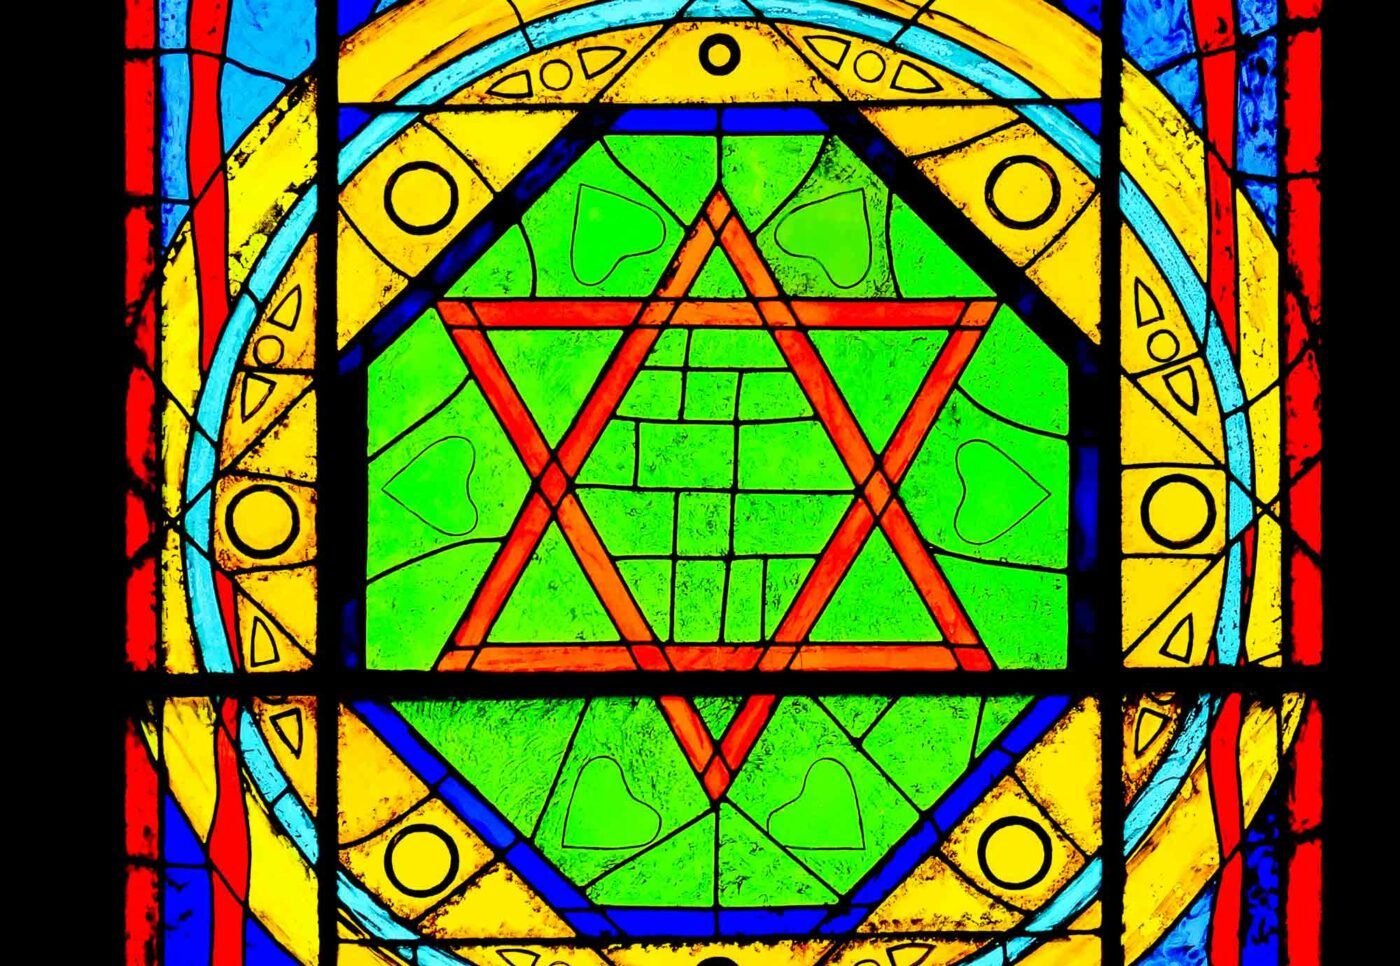 Am Tag des Judentums sollen sich Christinnen und Christen ihrer Verbundenheit mit dem Judentum deutlicher bewusst werden. Foto: pixabay